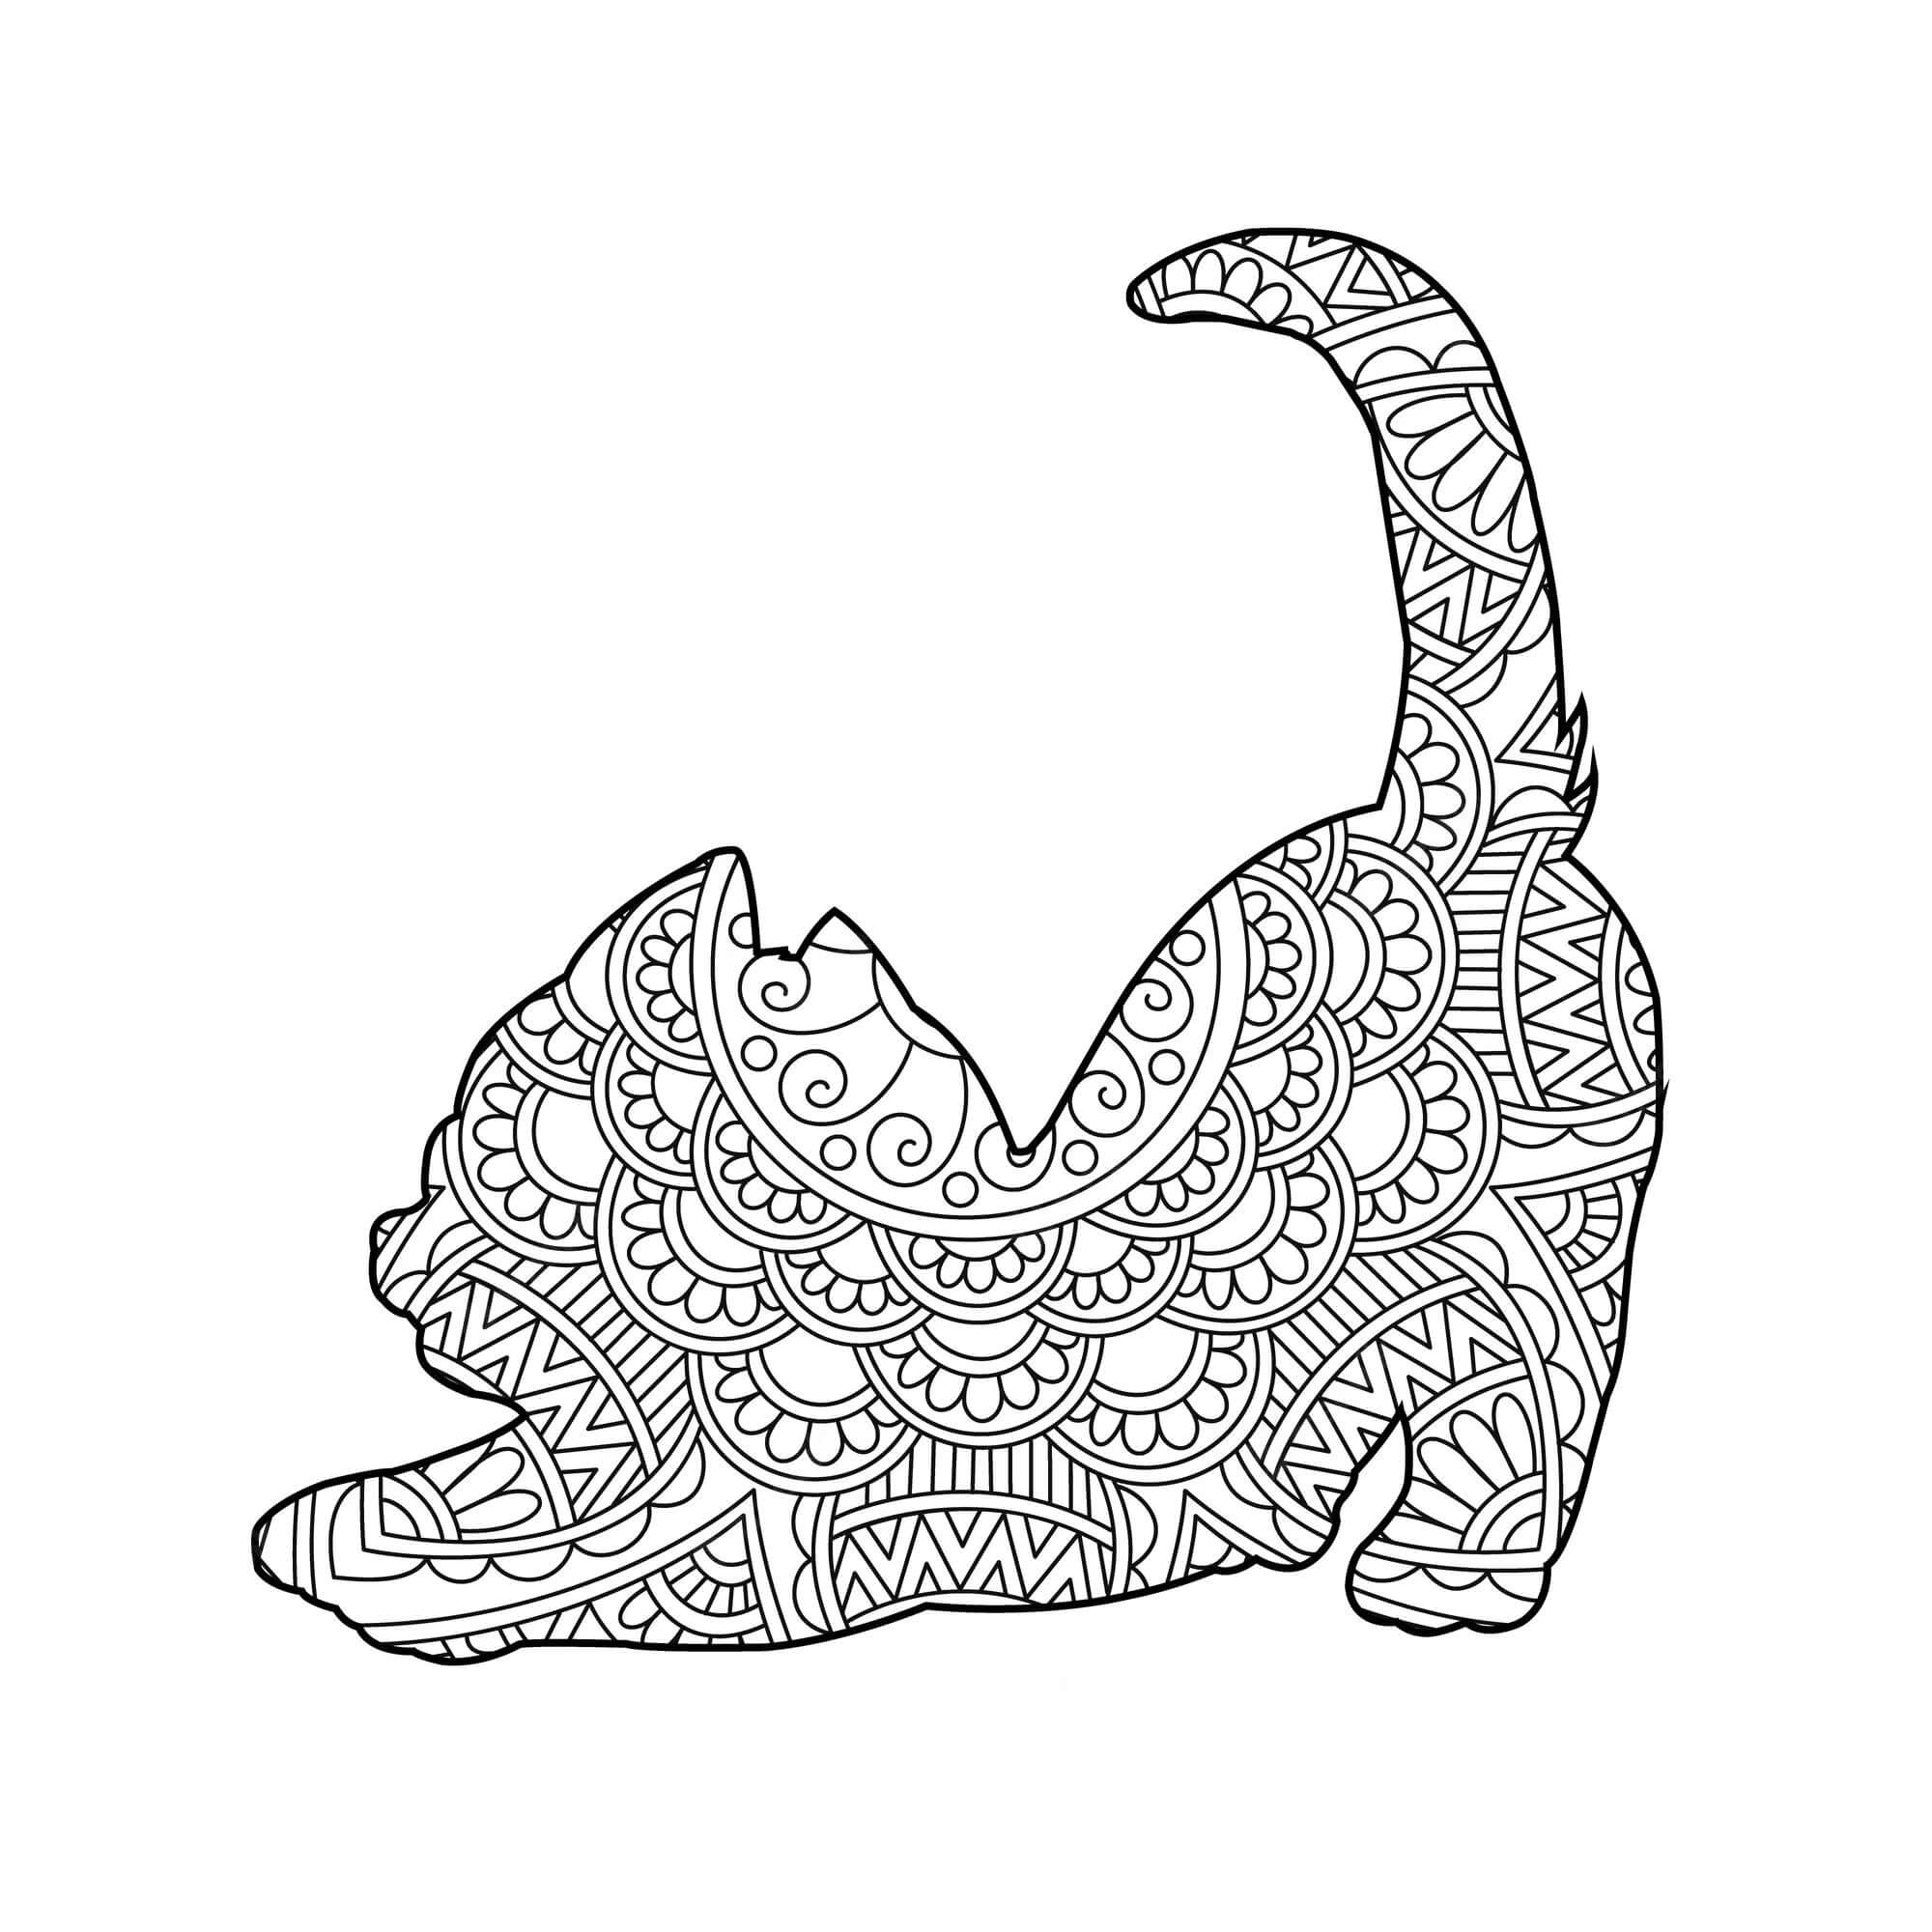 Mandala Cat Coloring Page – Sheet 16 Mandala